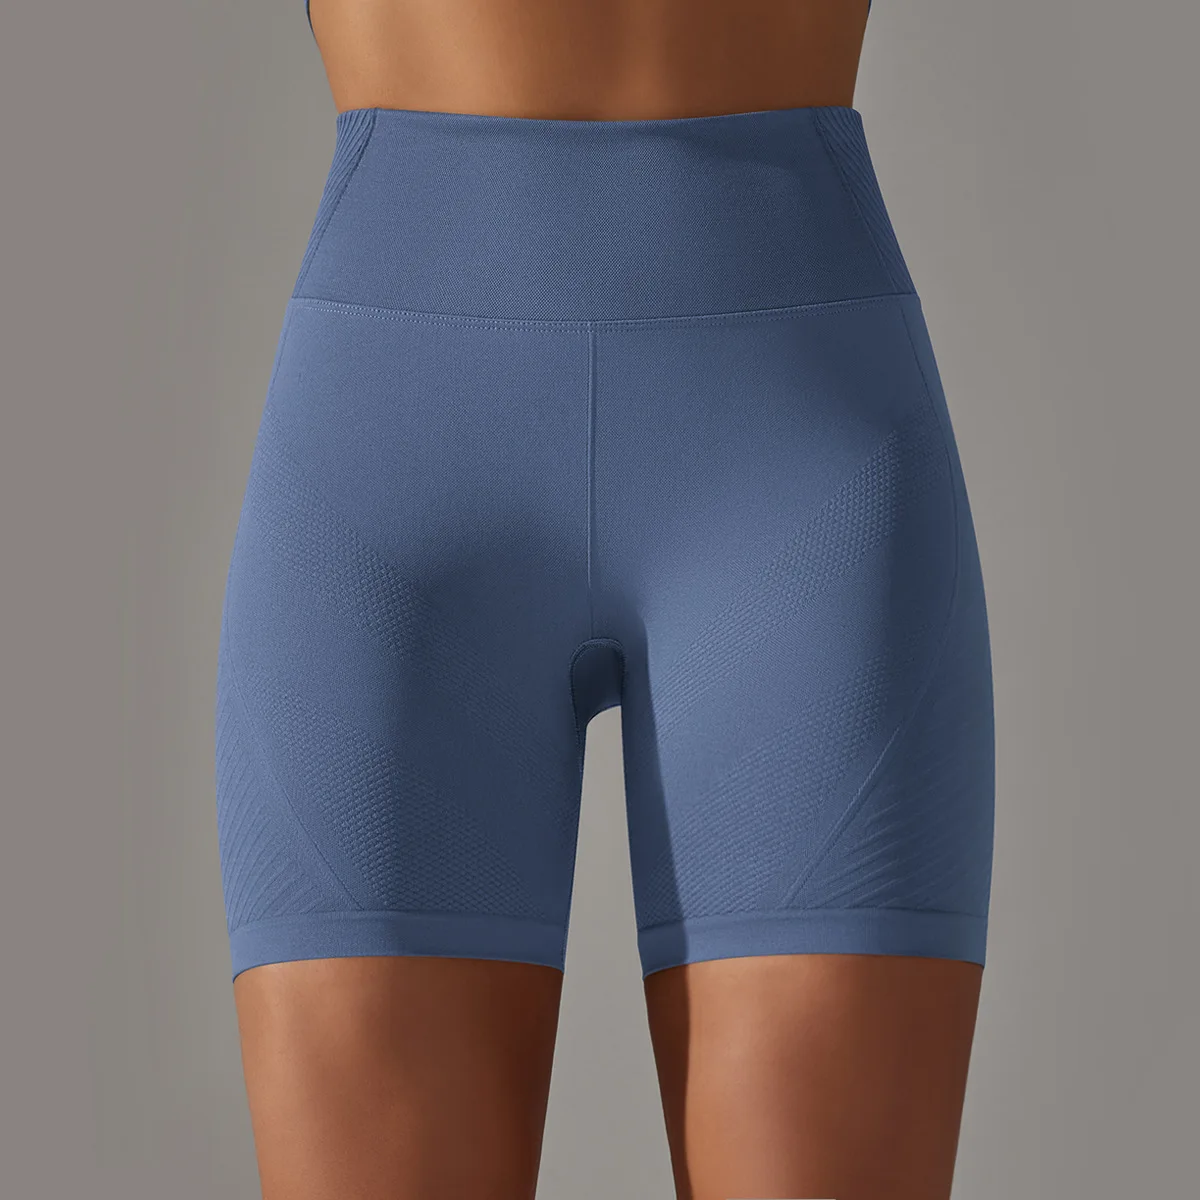 

Бесшовные спортивные шорты с высокой талией, подтягивающие бедра, популярные в Интернете обтягивающие штаны для йоги, быстросохнущие тренировочные штаны для бега и фитнеса